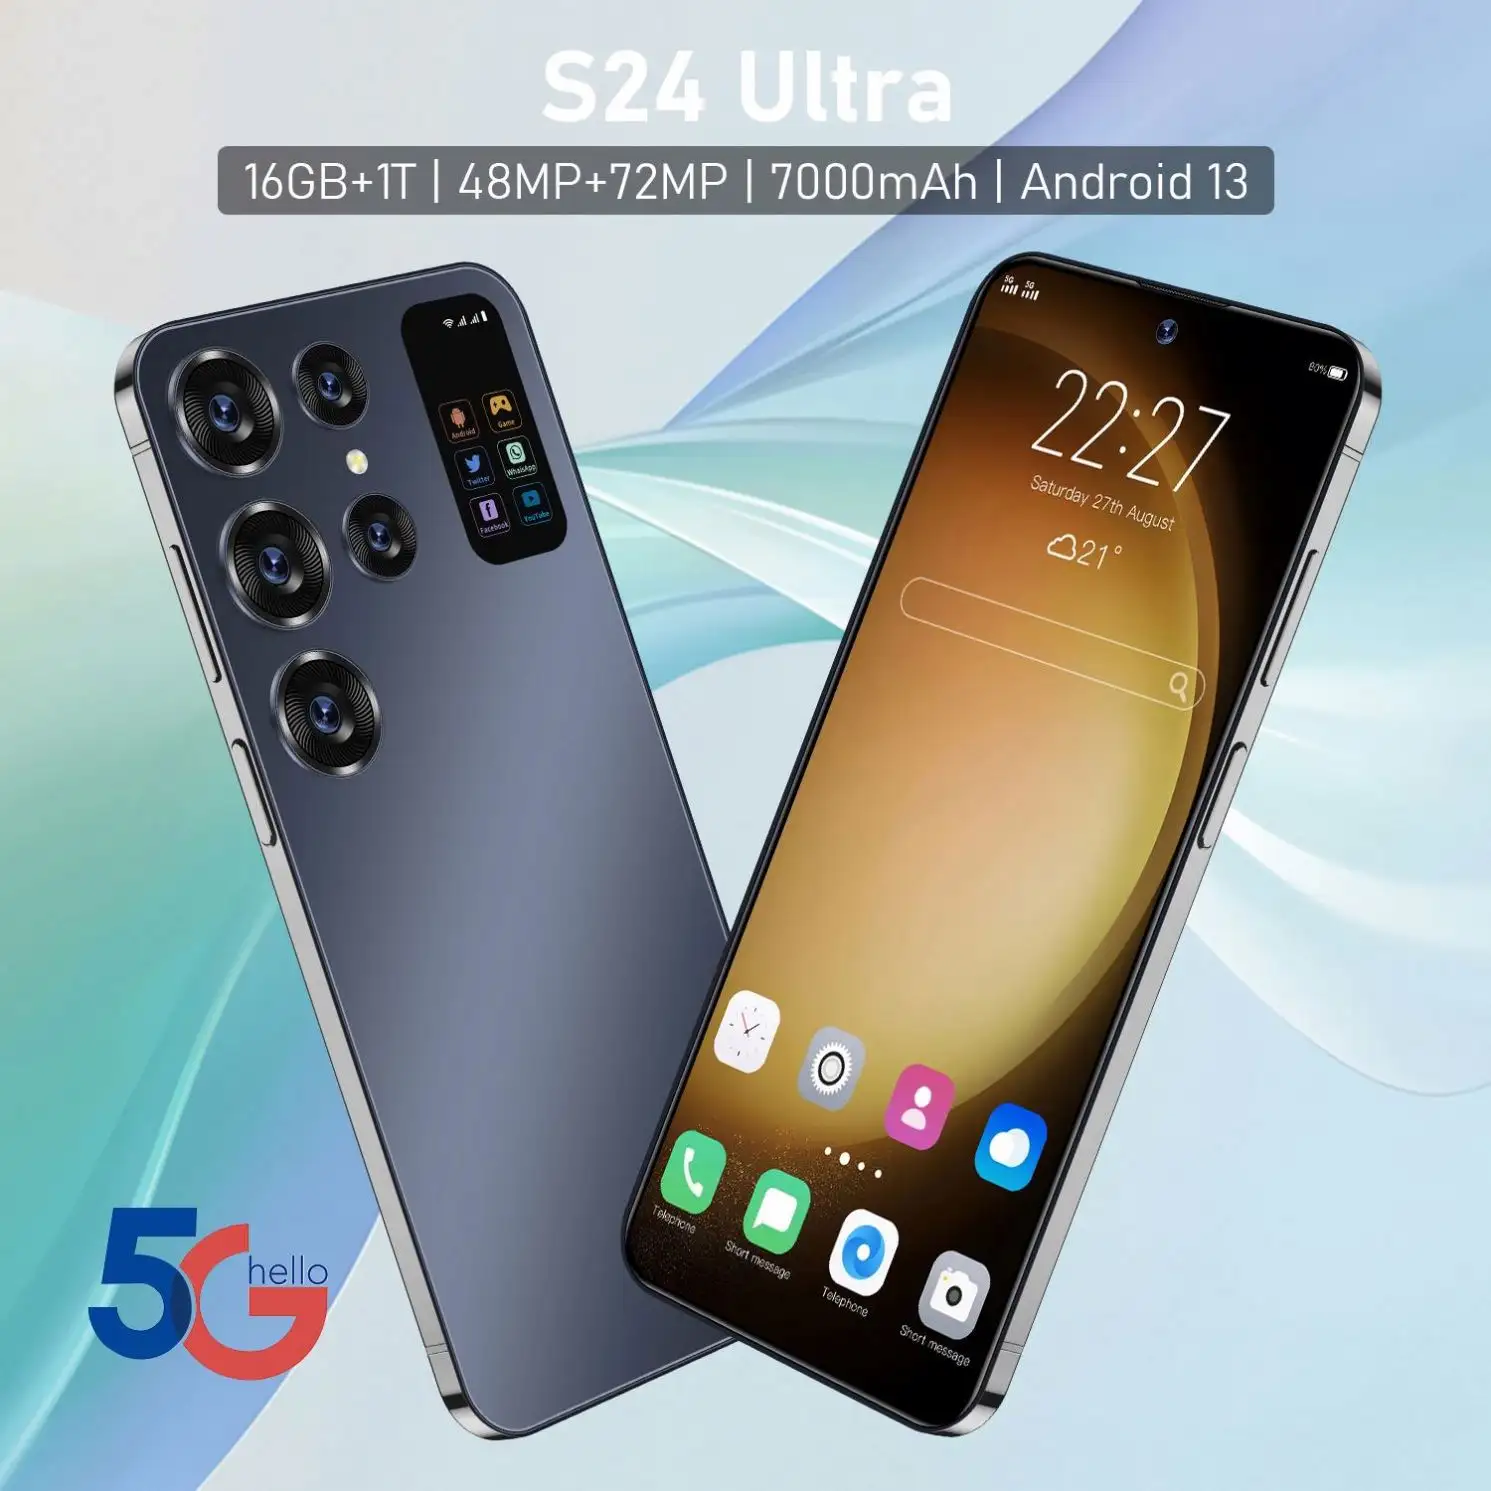 Оригинальный смартфон 5G S24 U Itra 5,5 дюймов Android 12 мобильные телефоны 3G 4G LTE сетевое распознавание лица отпечатков пальцев